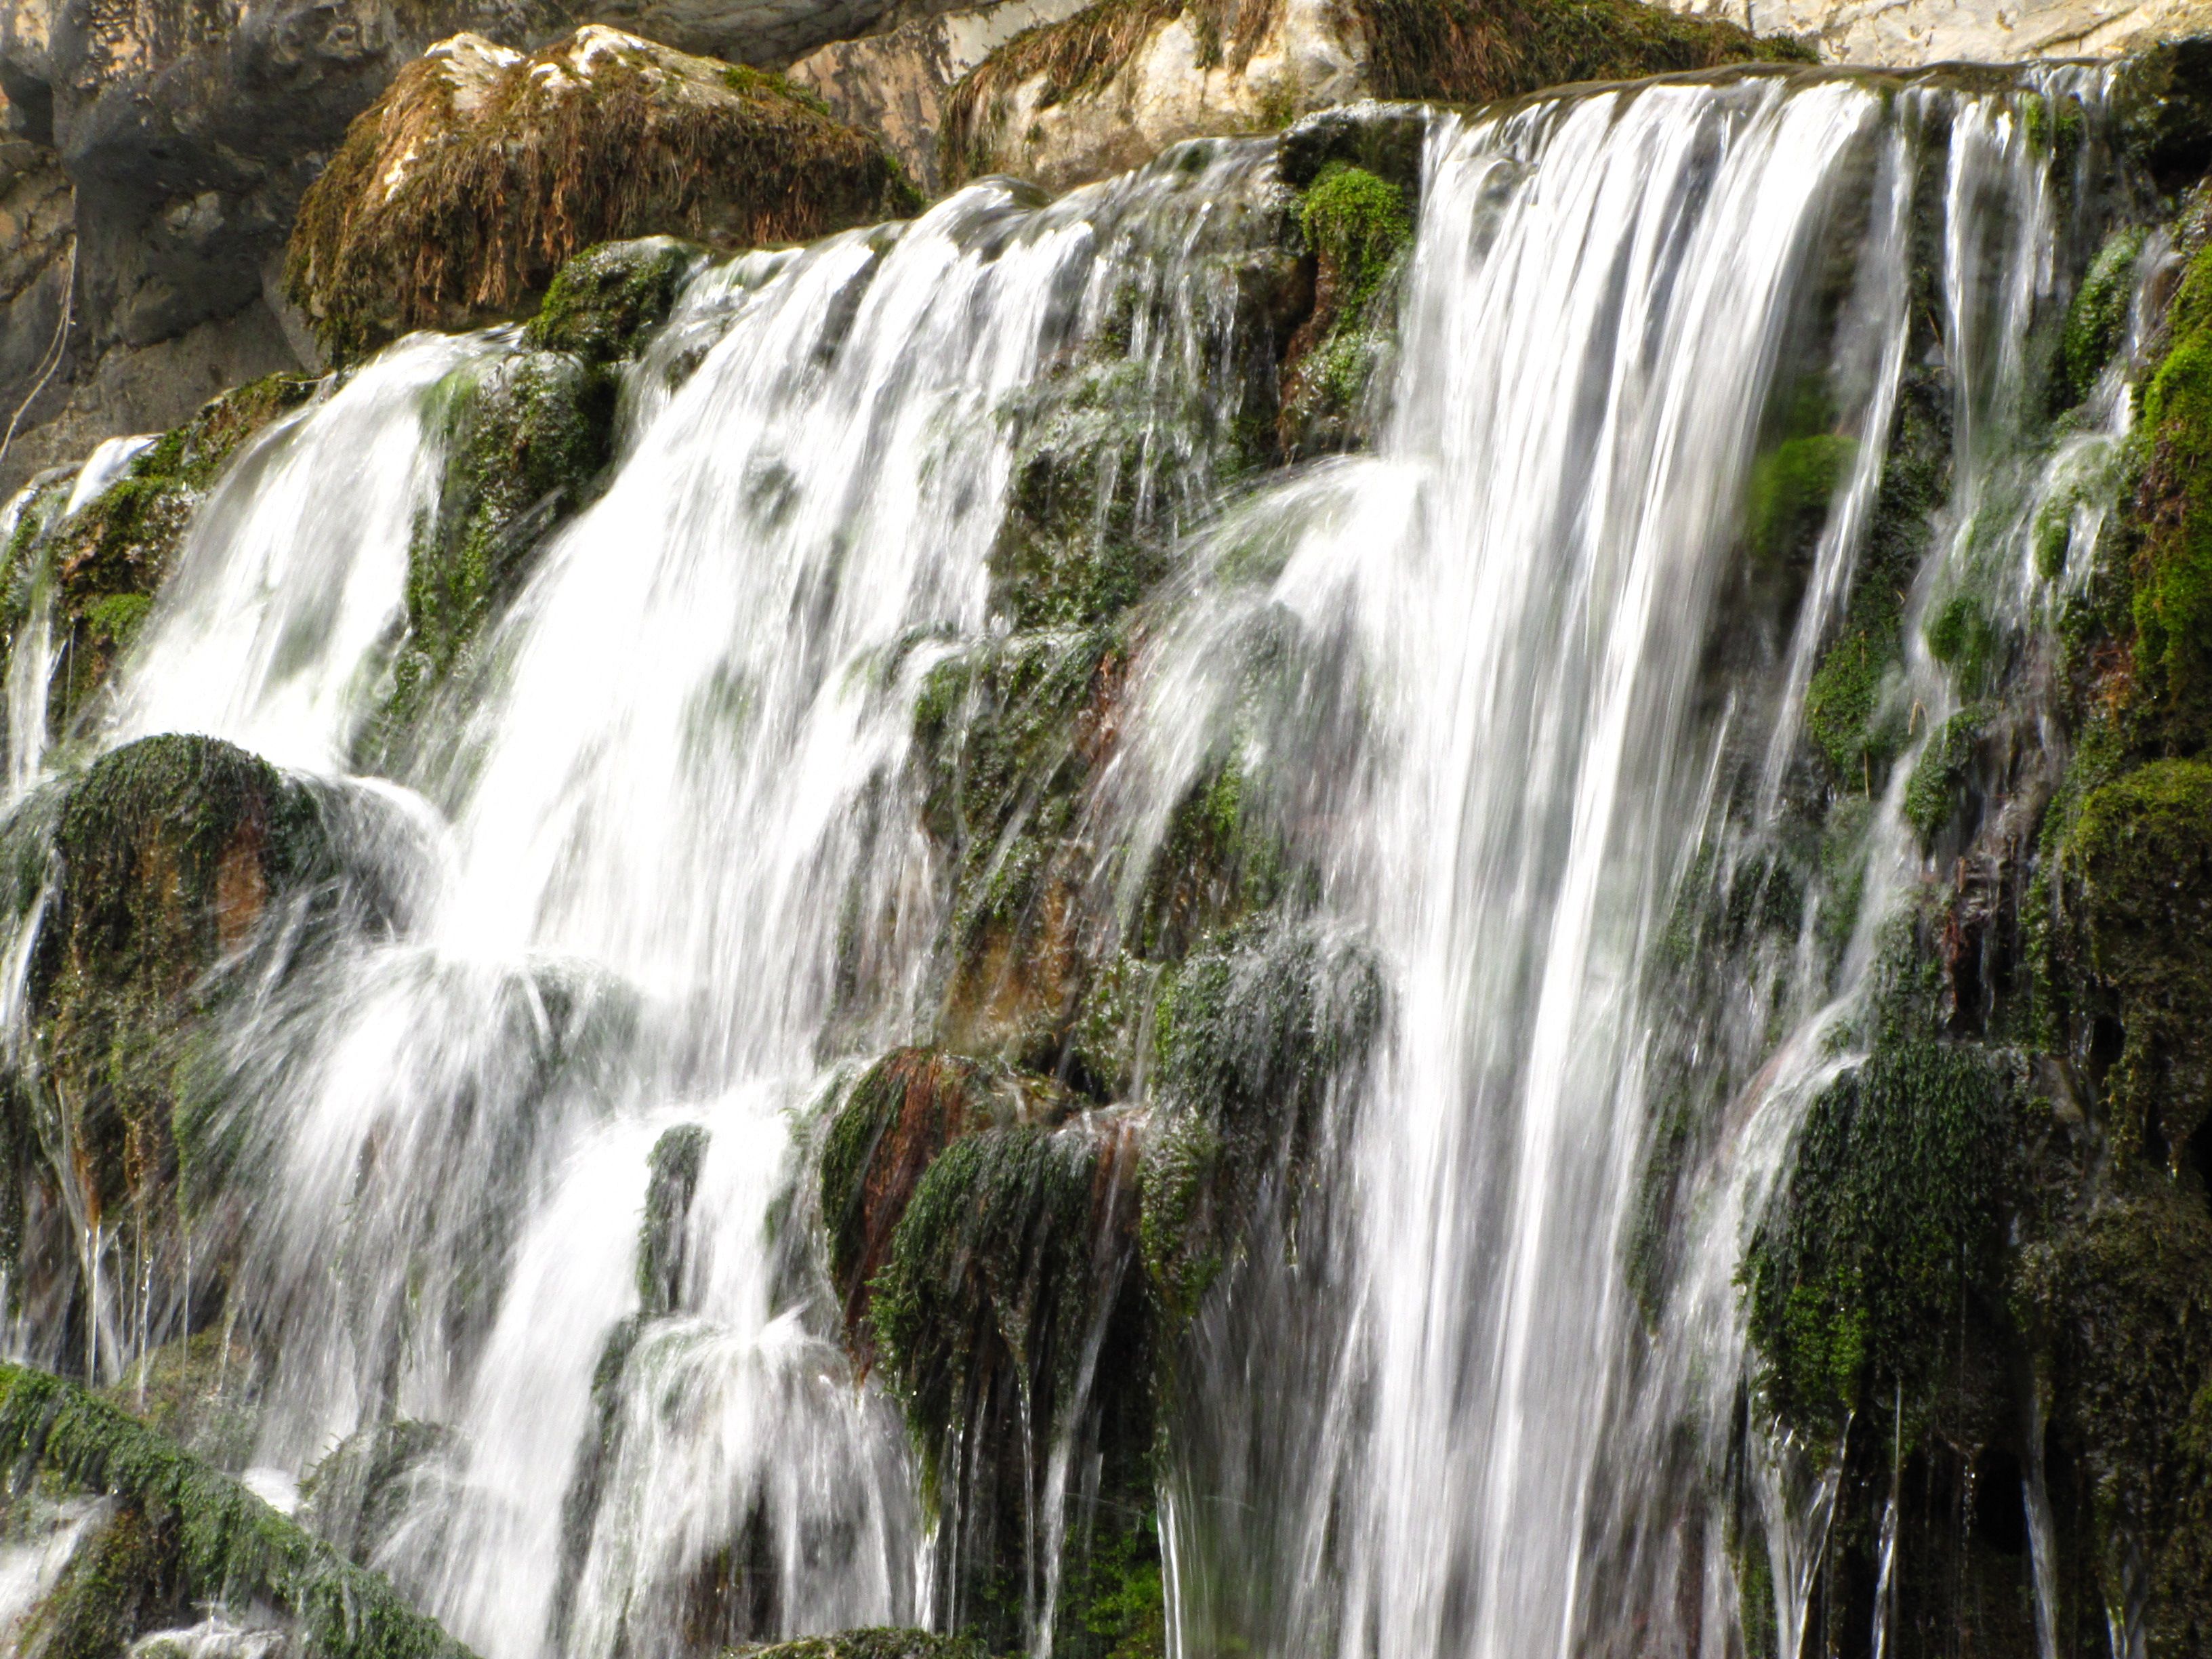 България е сред страните, ощастливени със значителни водни ресурси. Водопад при гара Лакатник, в Искърското дефиле